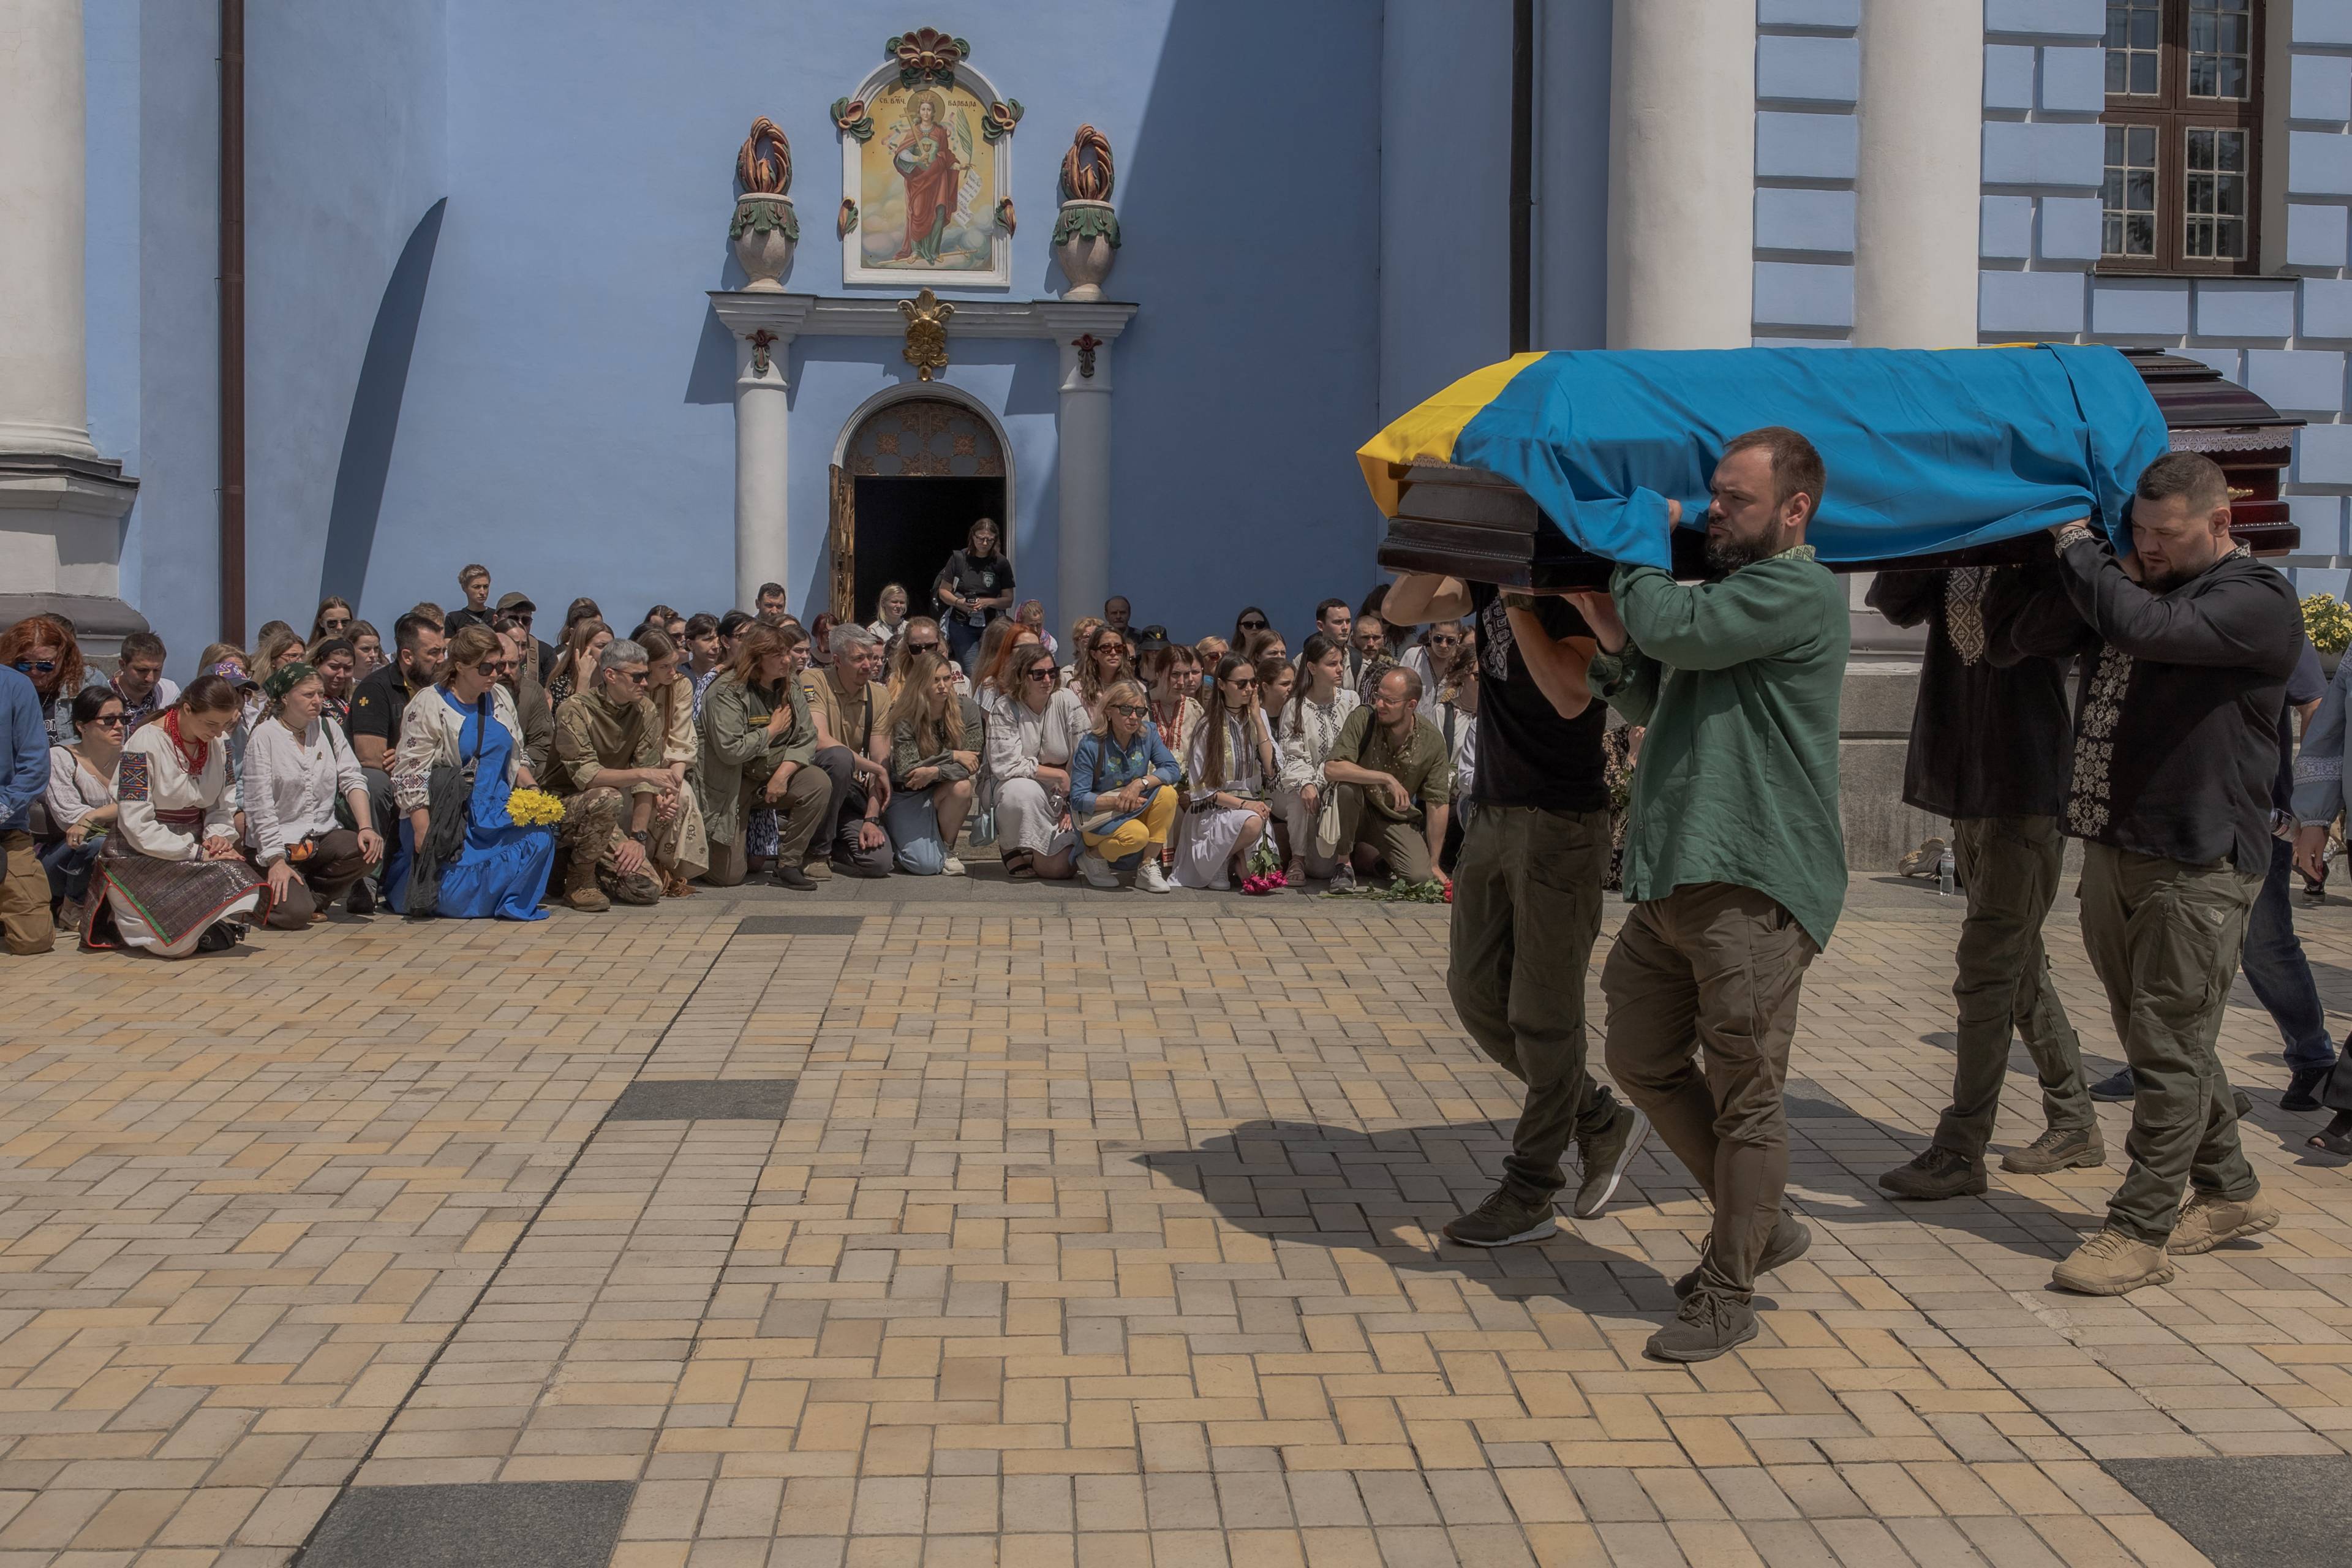 mężczyźni niosą trumnę spowitą w niebiesko-zółtą flagę, w tle cerkiew i klęczący żałobnicy